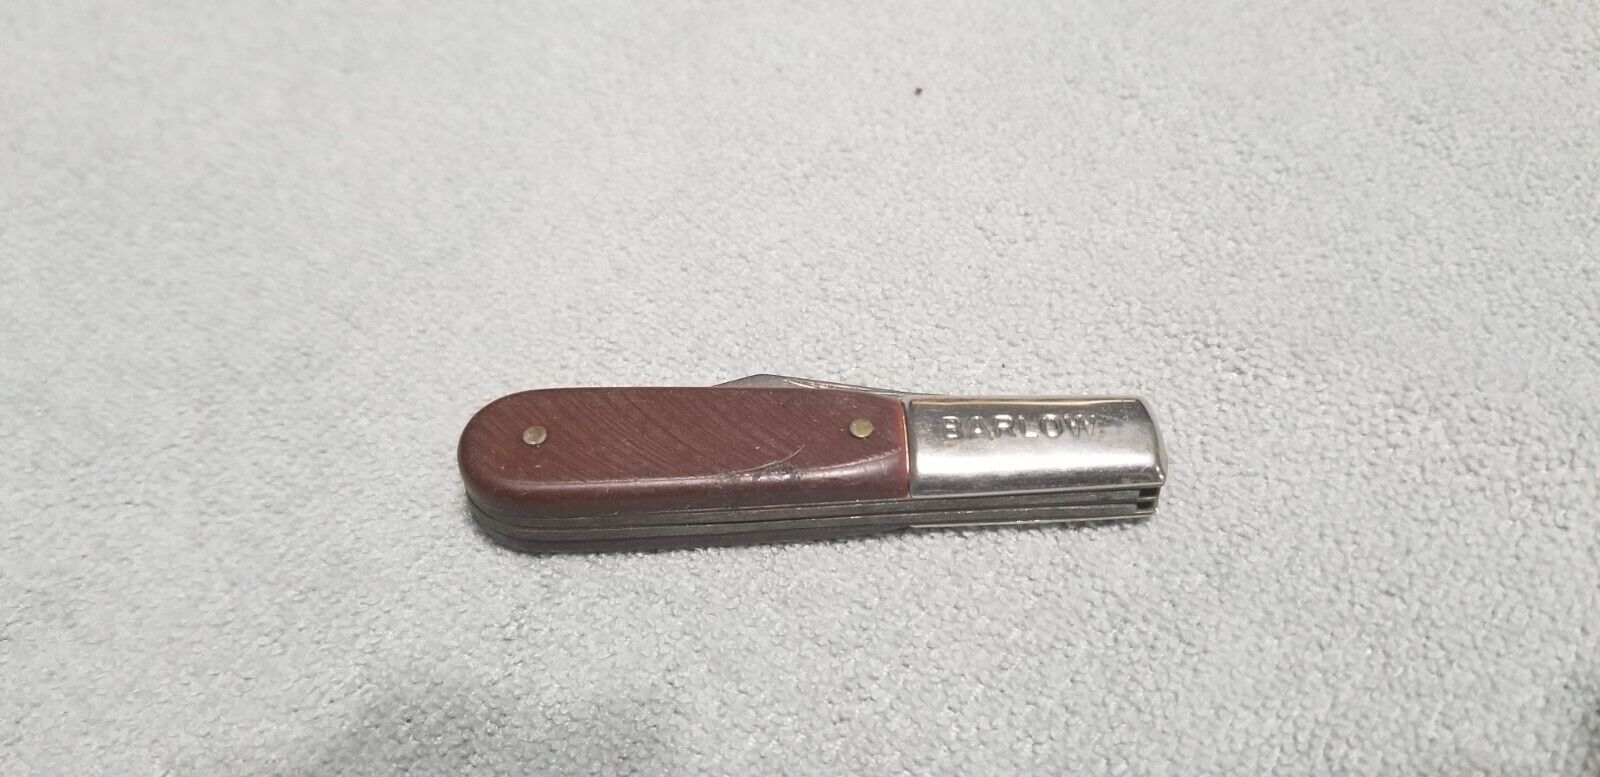 Vintage Imperial Barlow 2 blade pocket knife